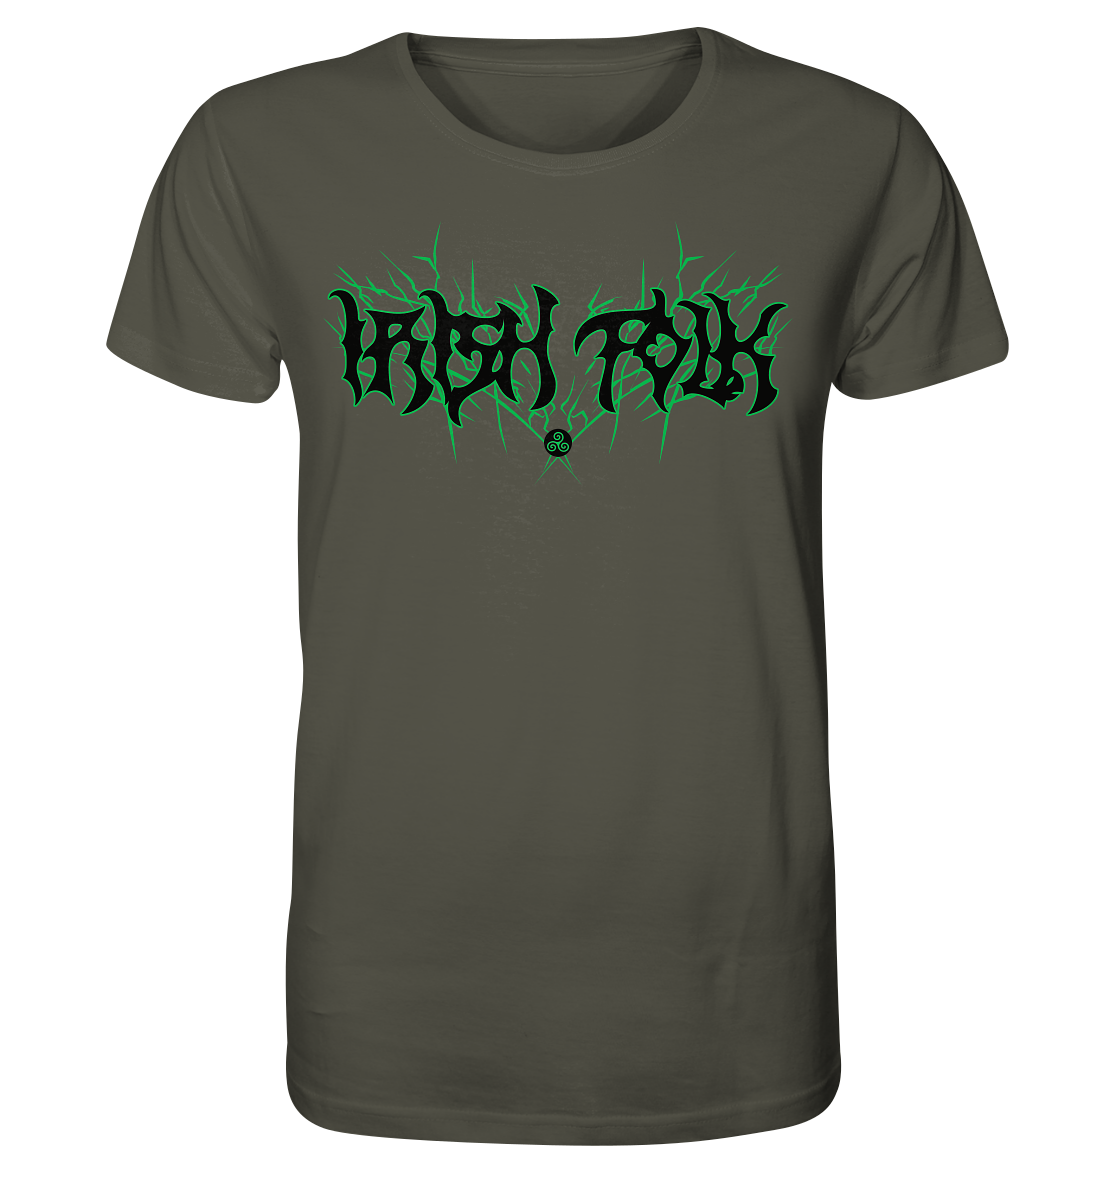 Irish Folk "Metal Band" - Organic Shirt